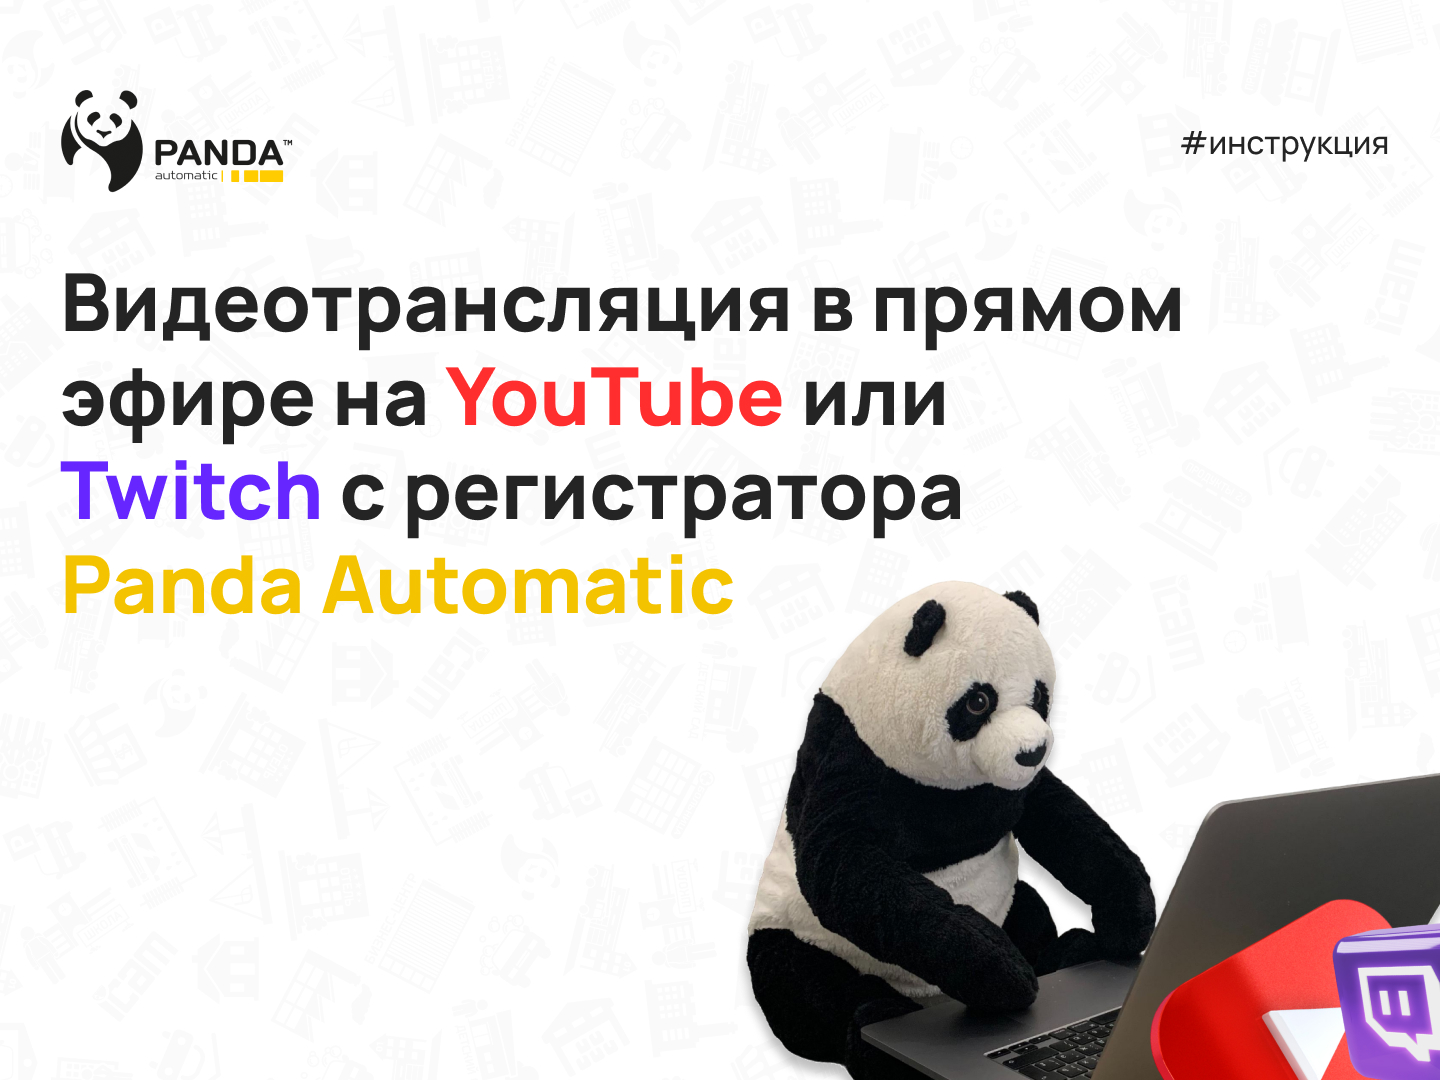 Как запустить трансляцию на YouTube или Twitch с видеорегистраторов Panda Automatic?